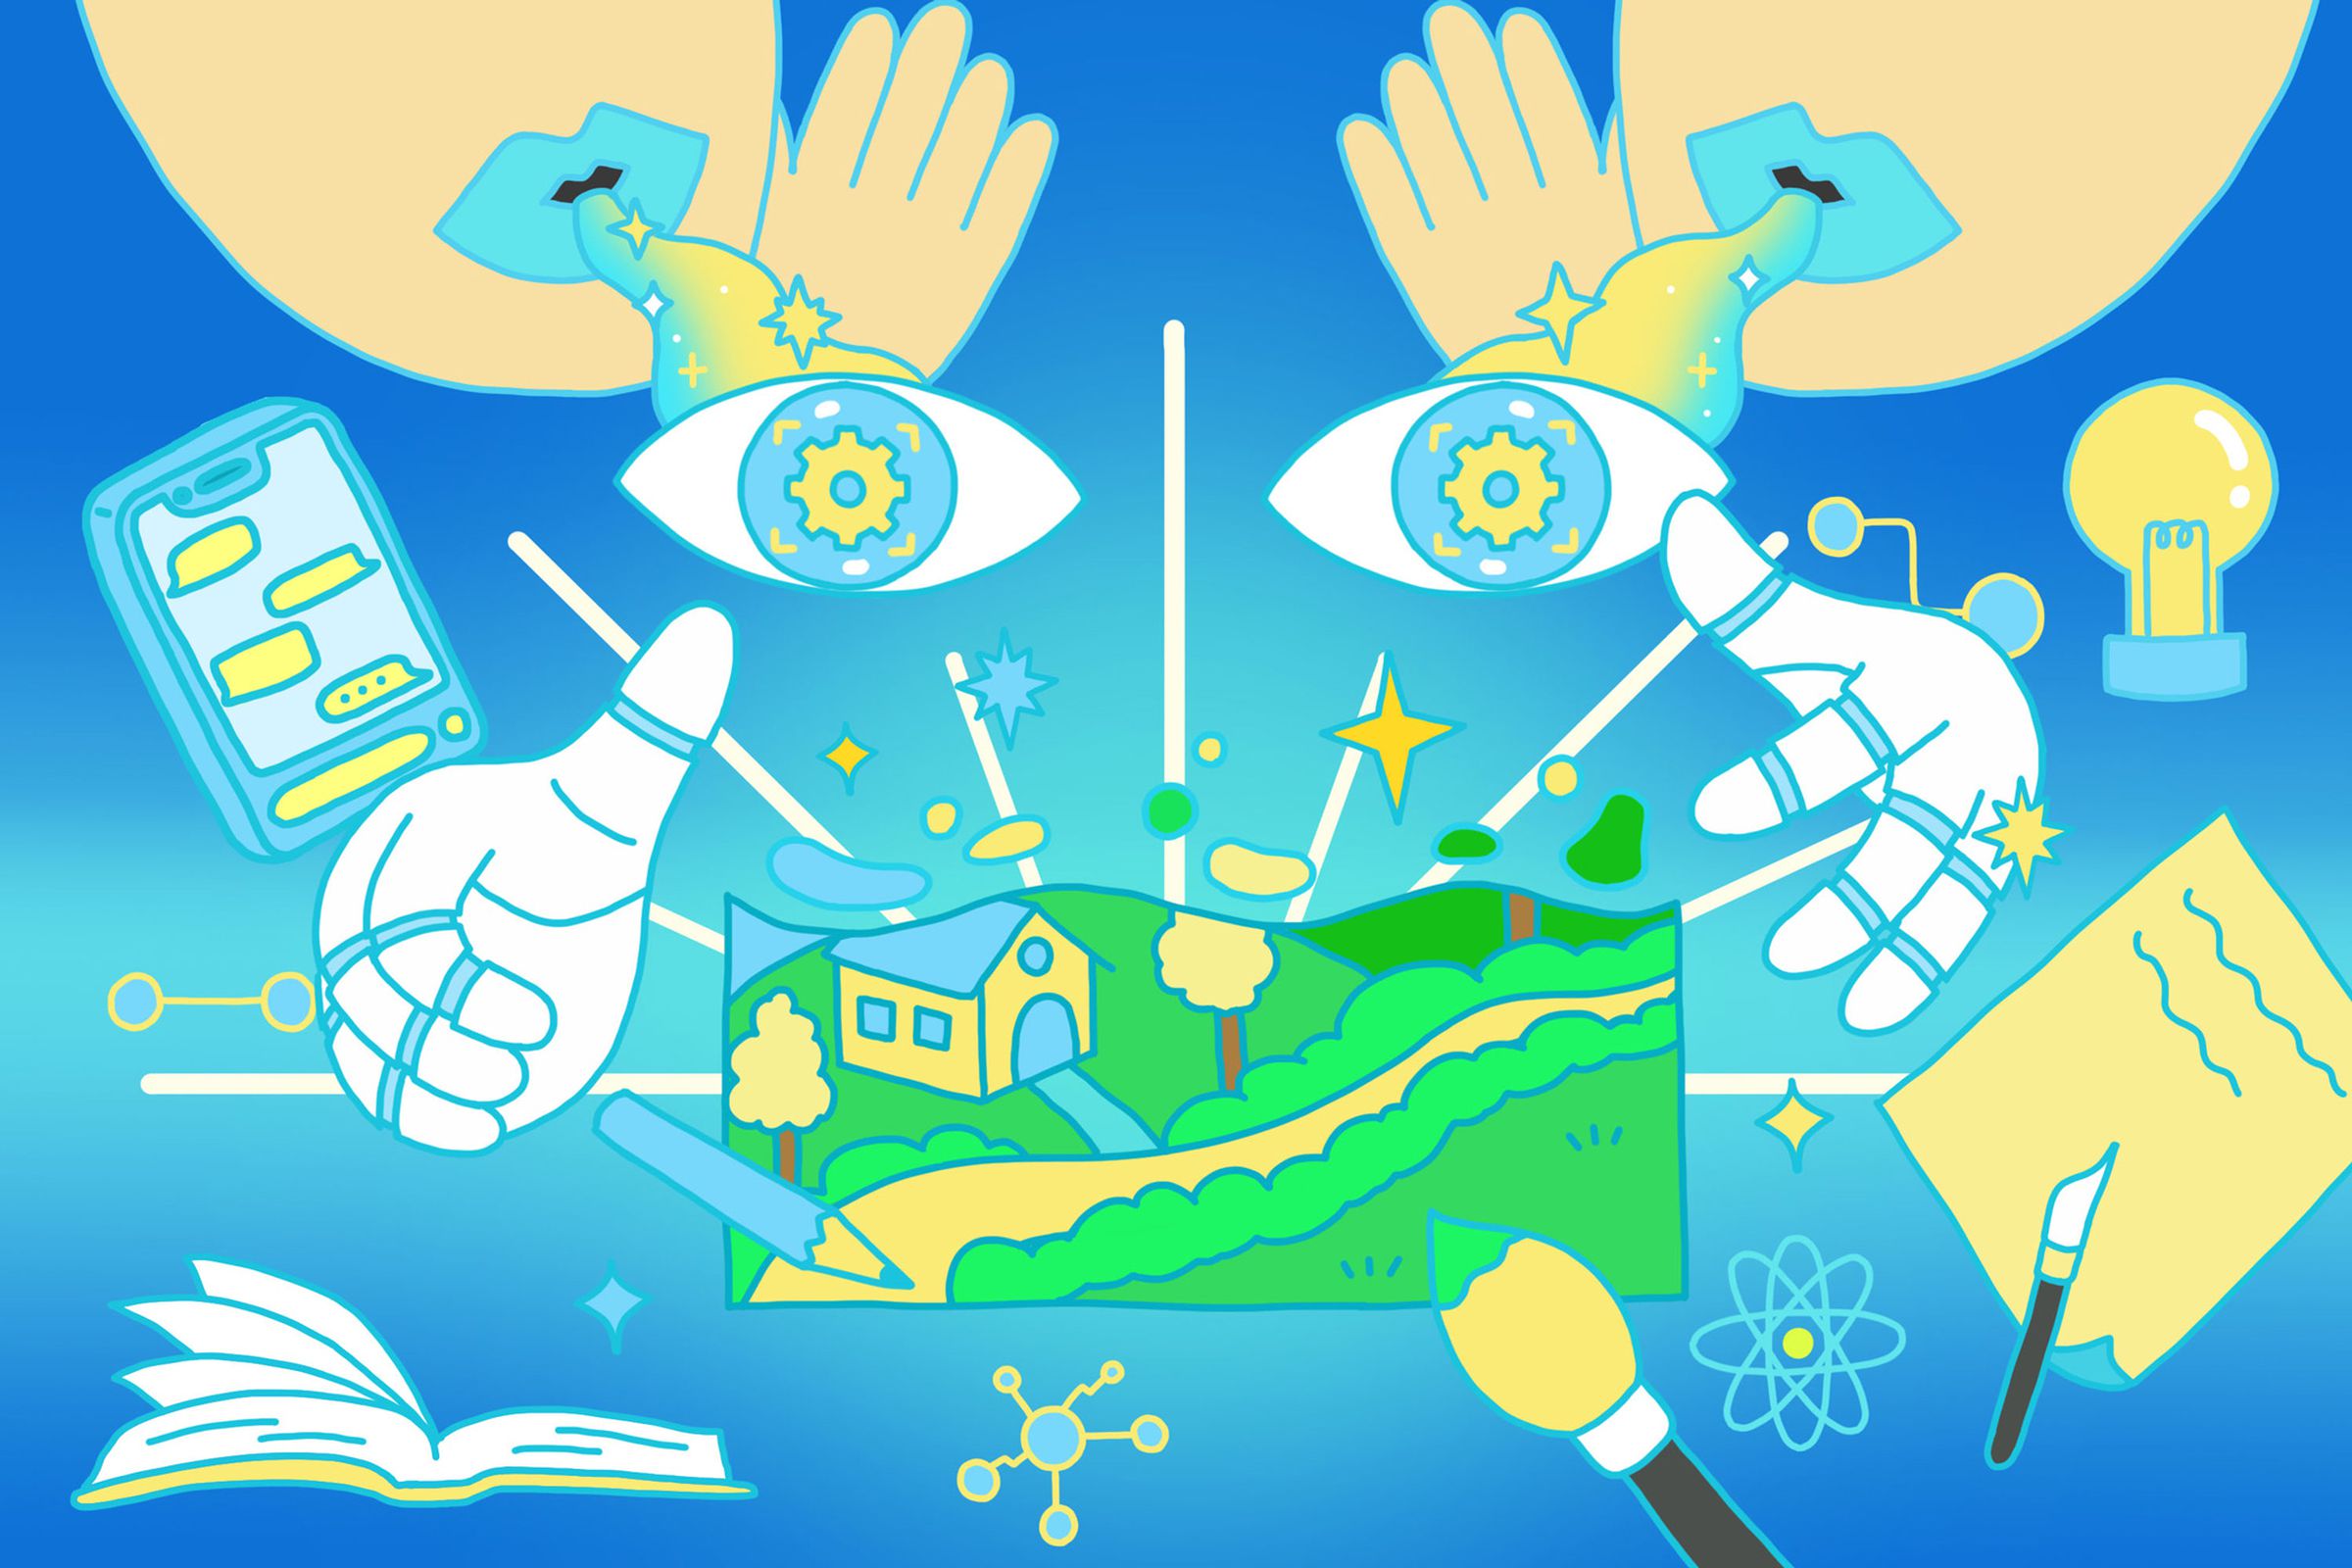 Sebuah grafis psychedelic yang menampilkan kumpulan item seperti kuas, buku, pesan telepon, dan notepad untuk merepresentasikan AI generatif. Sepasang mata dan tangan besar terlihat di tengah gambar.